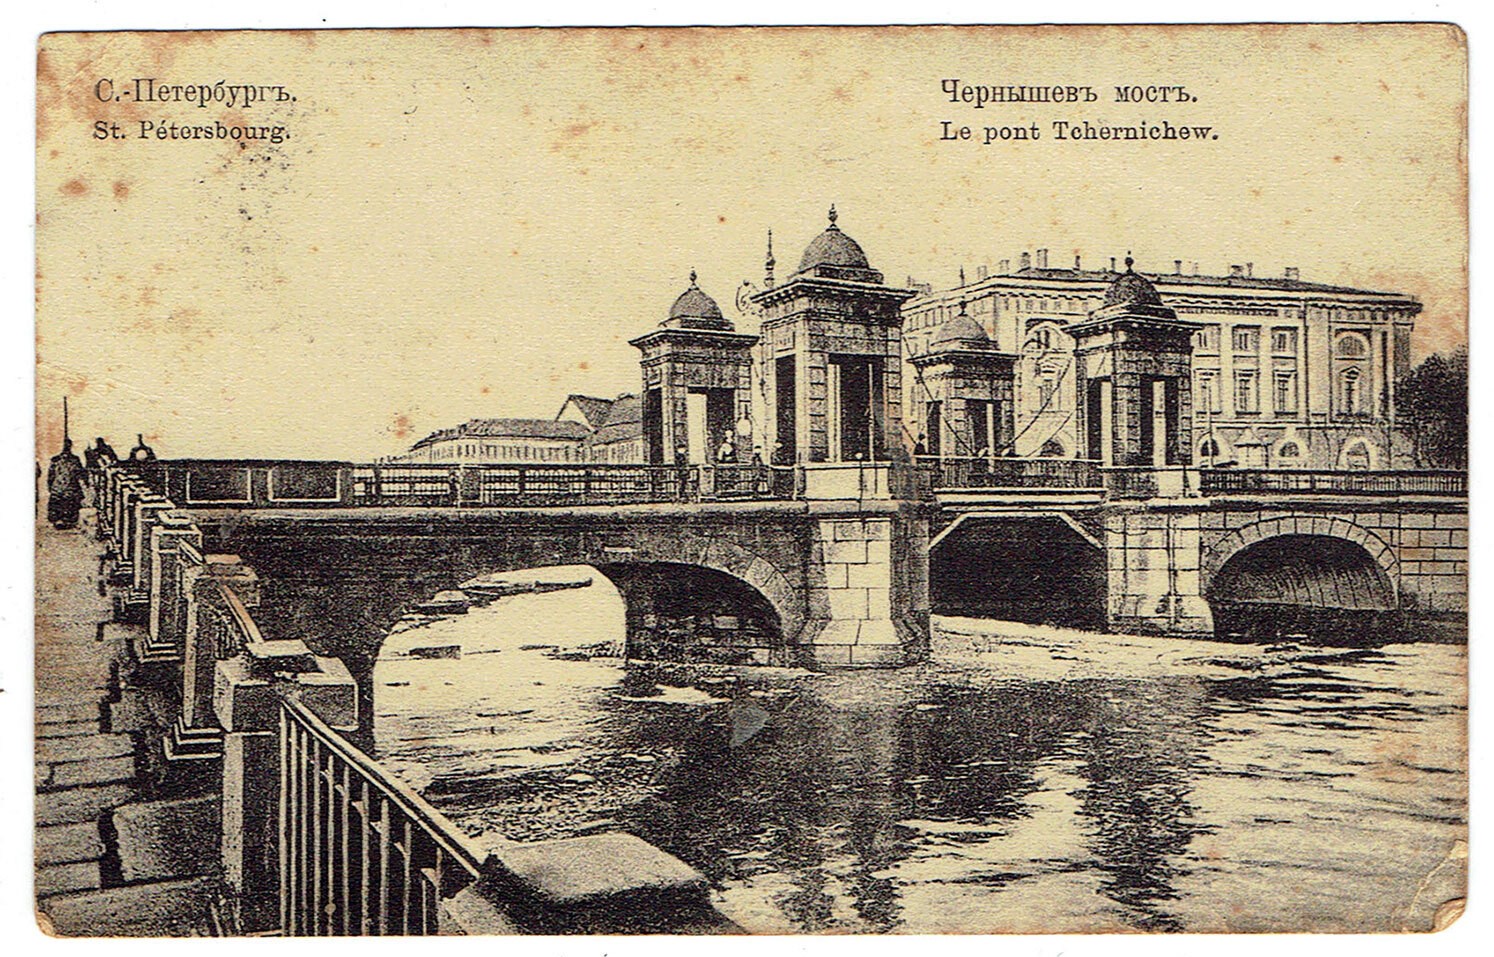 чернышёв мост спб фото